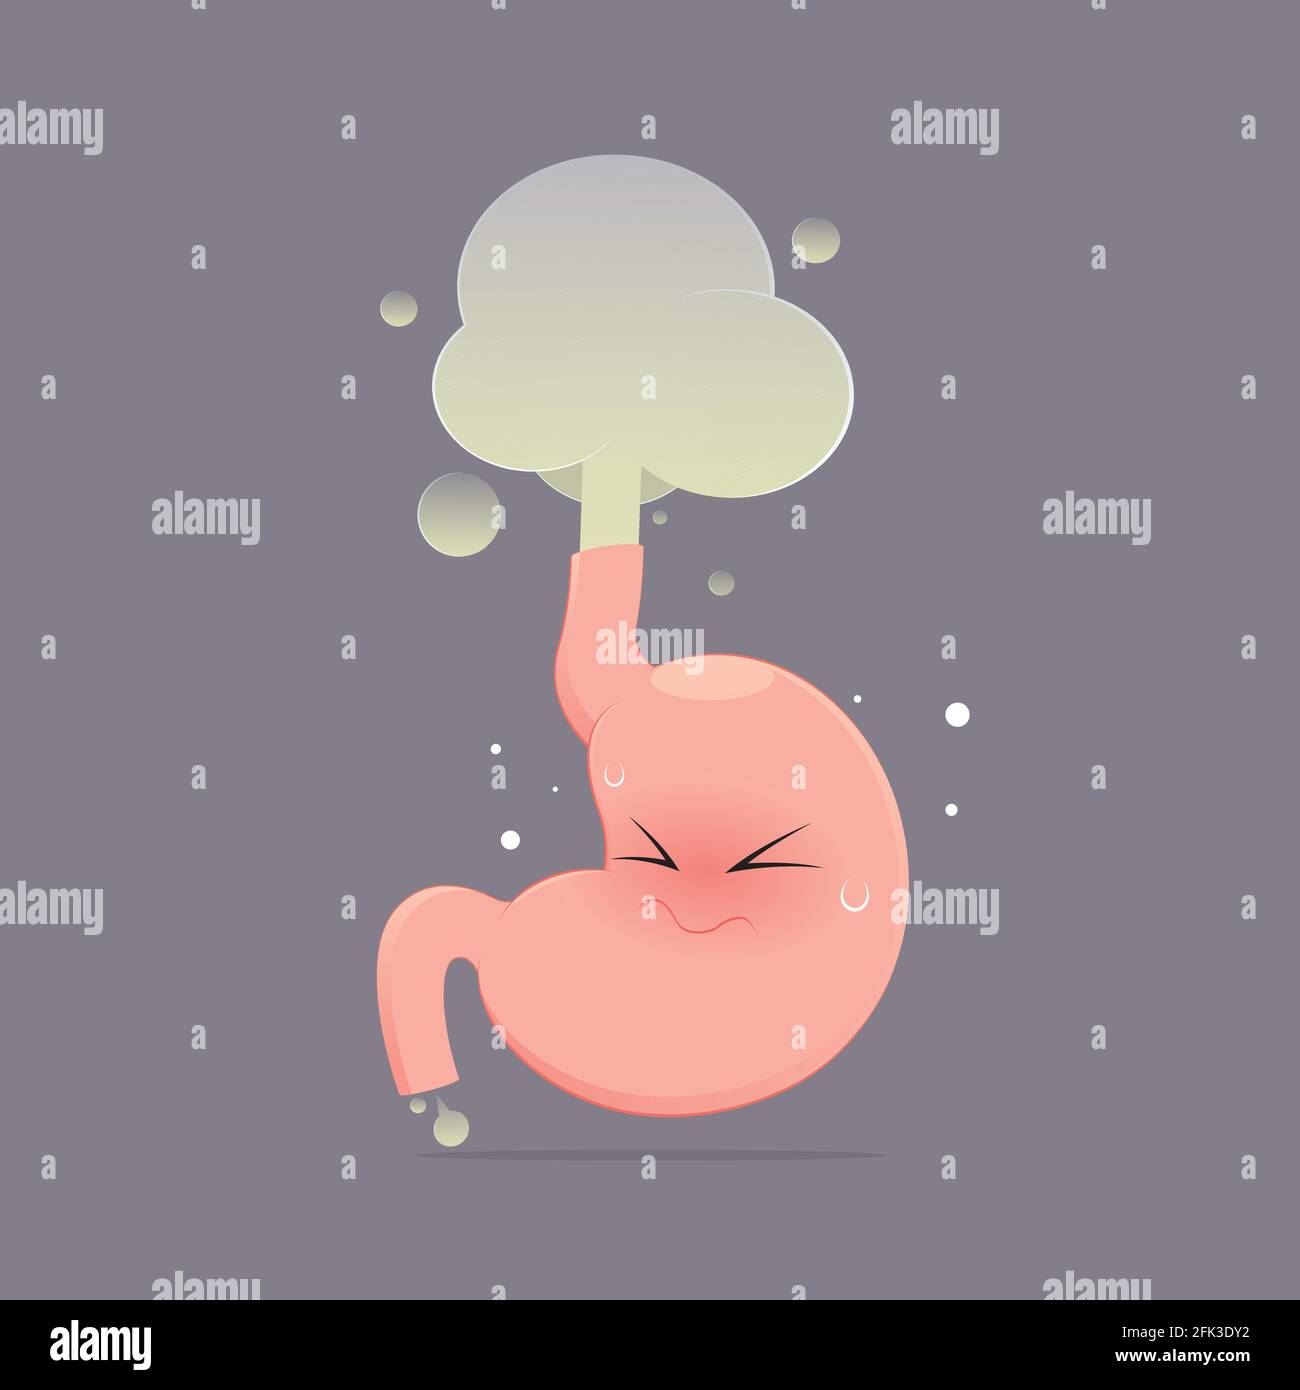 L'estomac est fart en raison de l'acide dans l'estomac, Cartoon vecteur, concept avec la santé interne Illustration de Vecteur